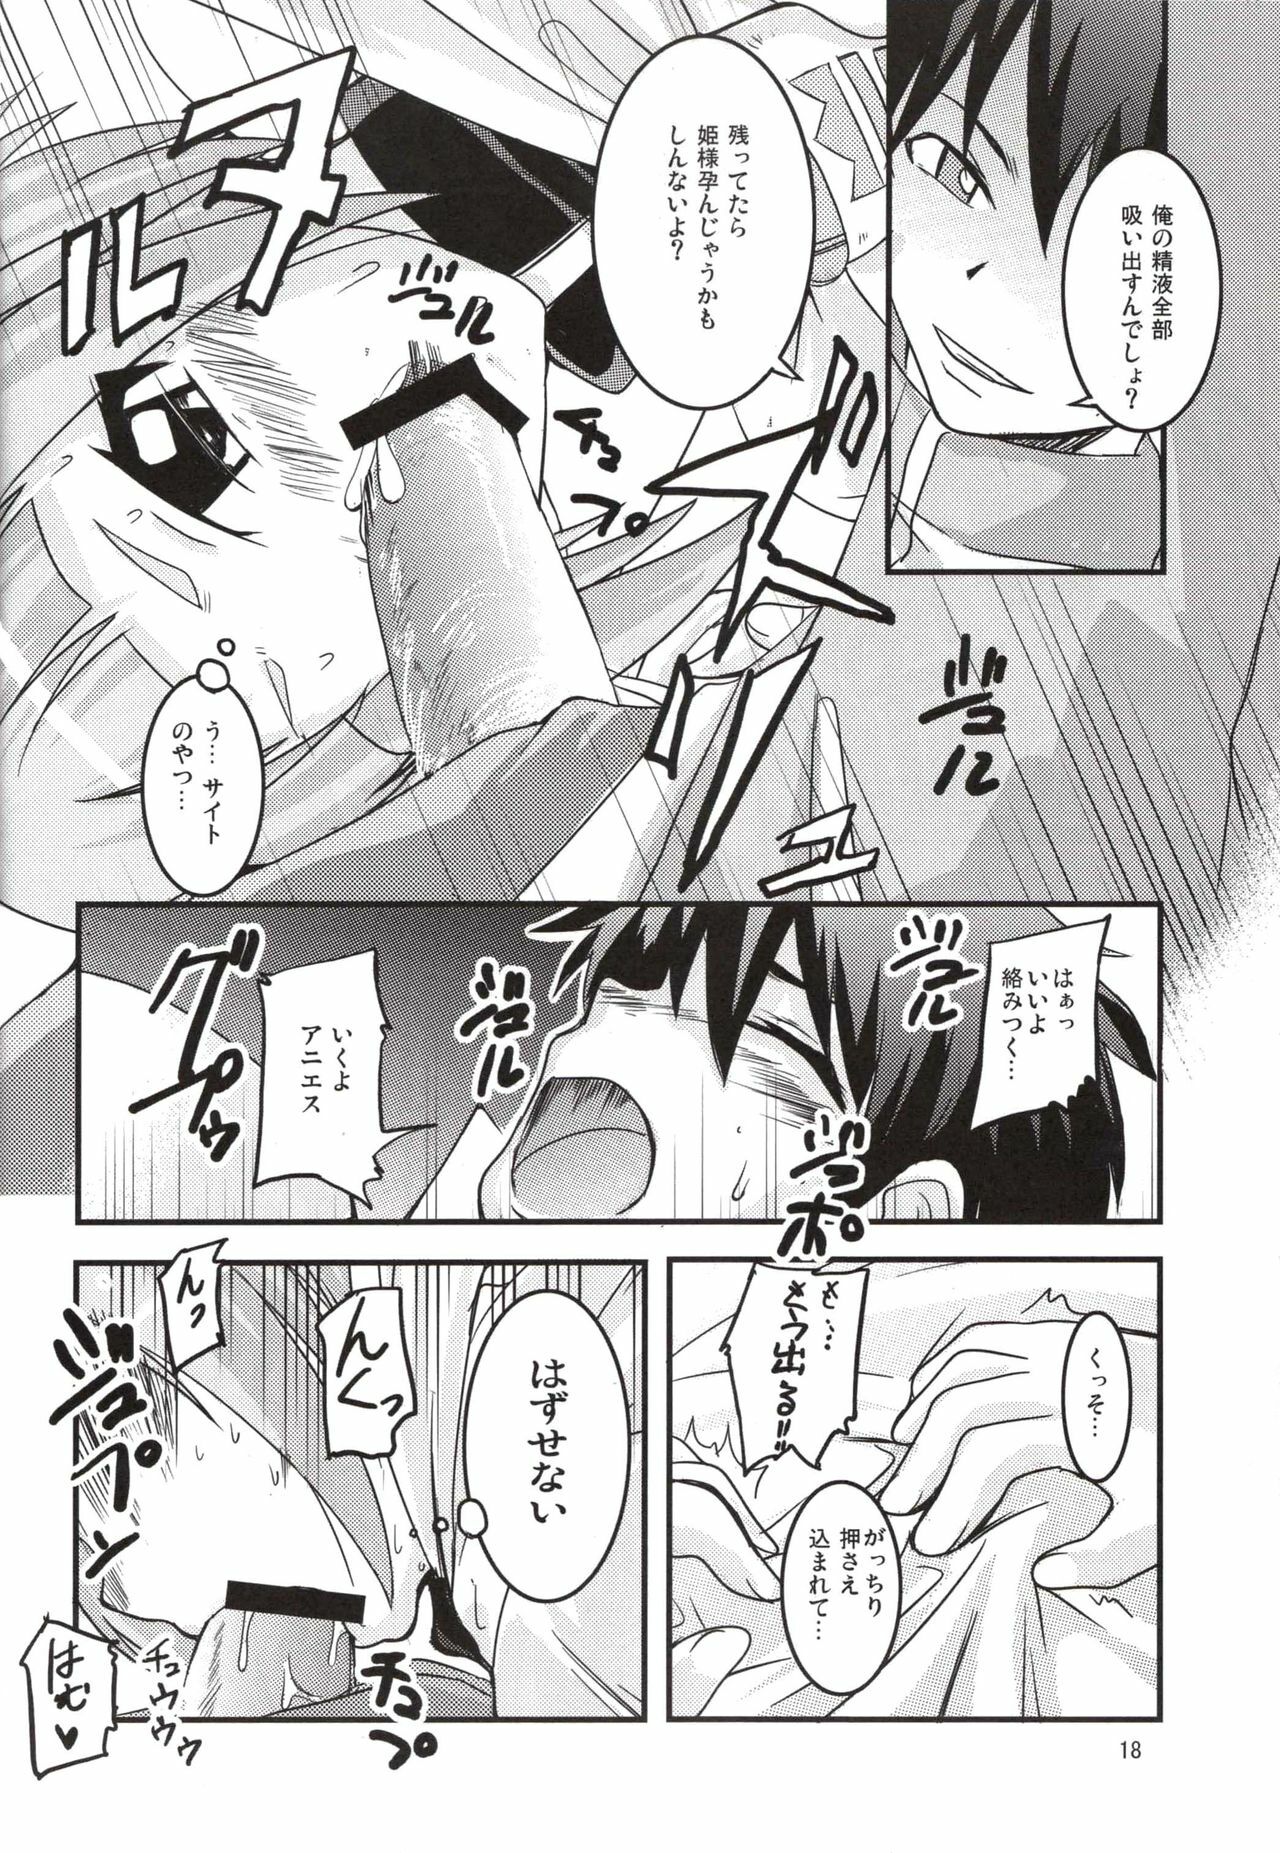 (SC37) [SOUND STICKER (Yoshida Masahiko)] Odekoron Knight (Zero no Tsukaima) page 18 full